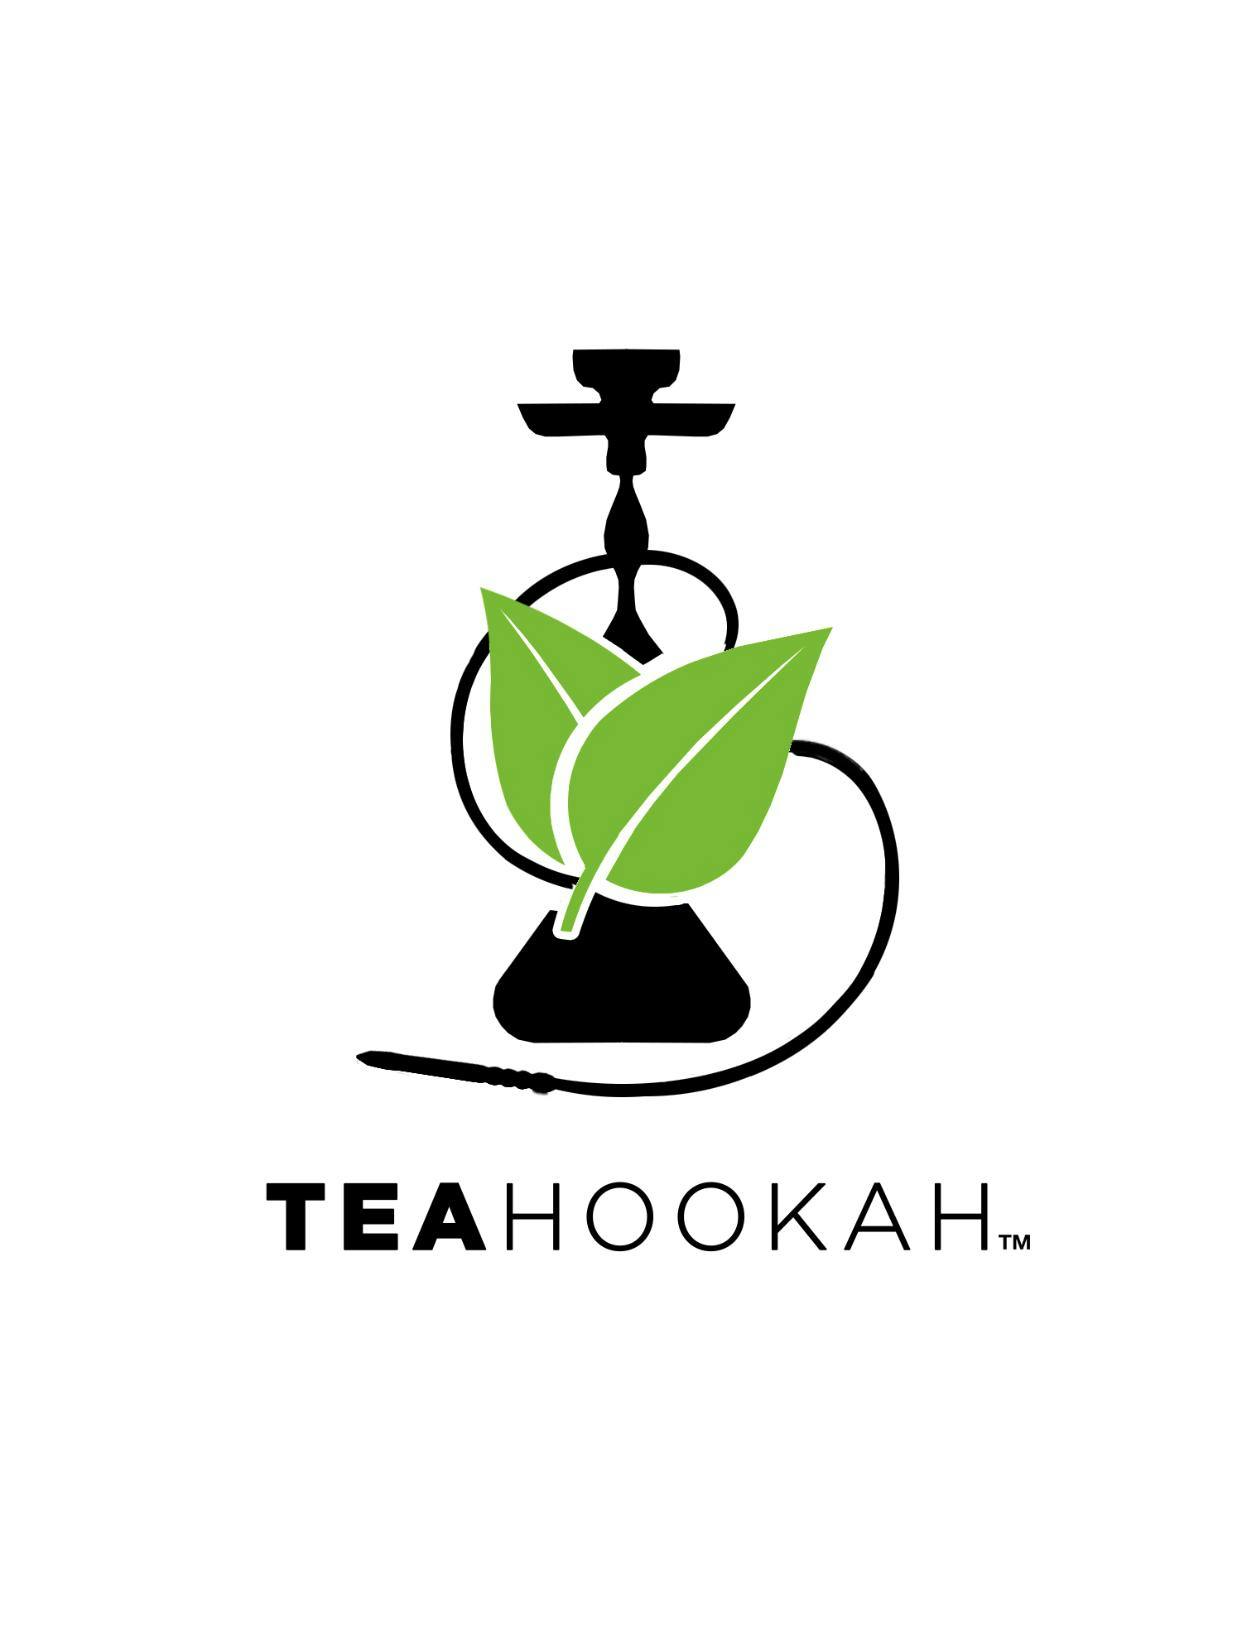 Tea Hookah Product Sampling Launch